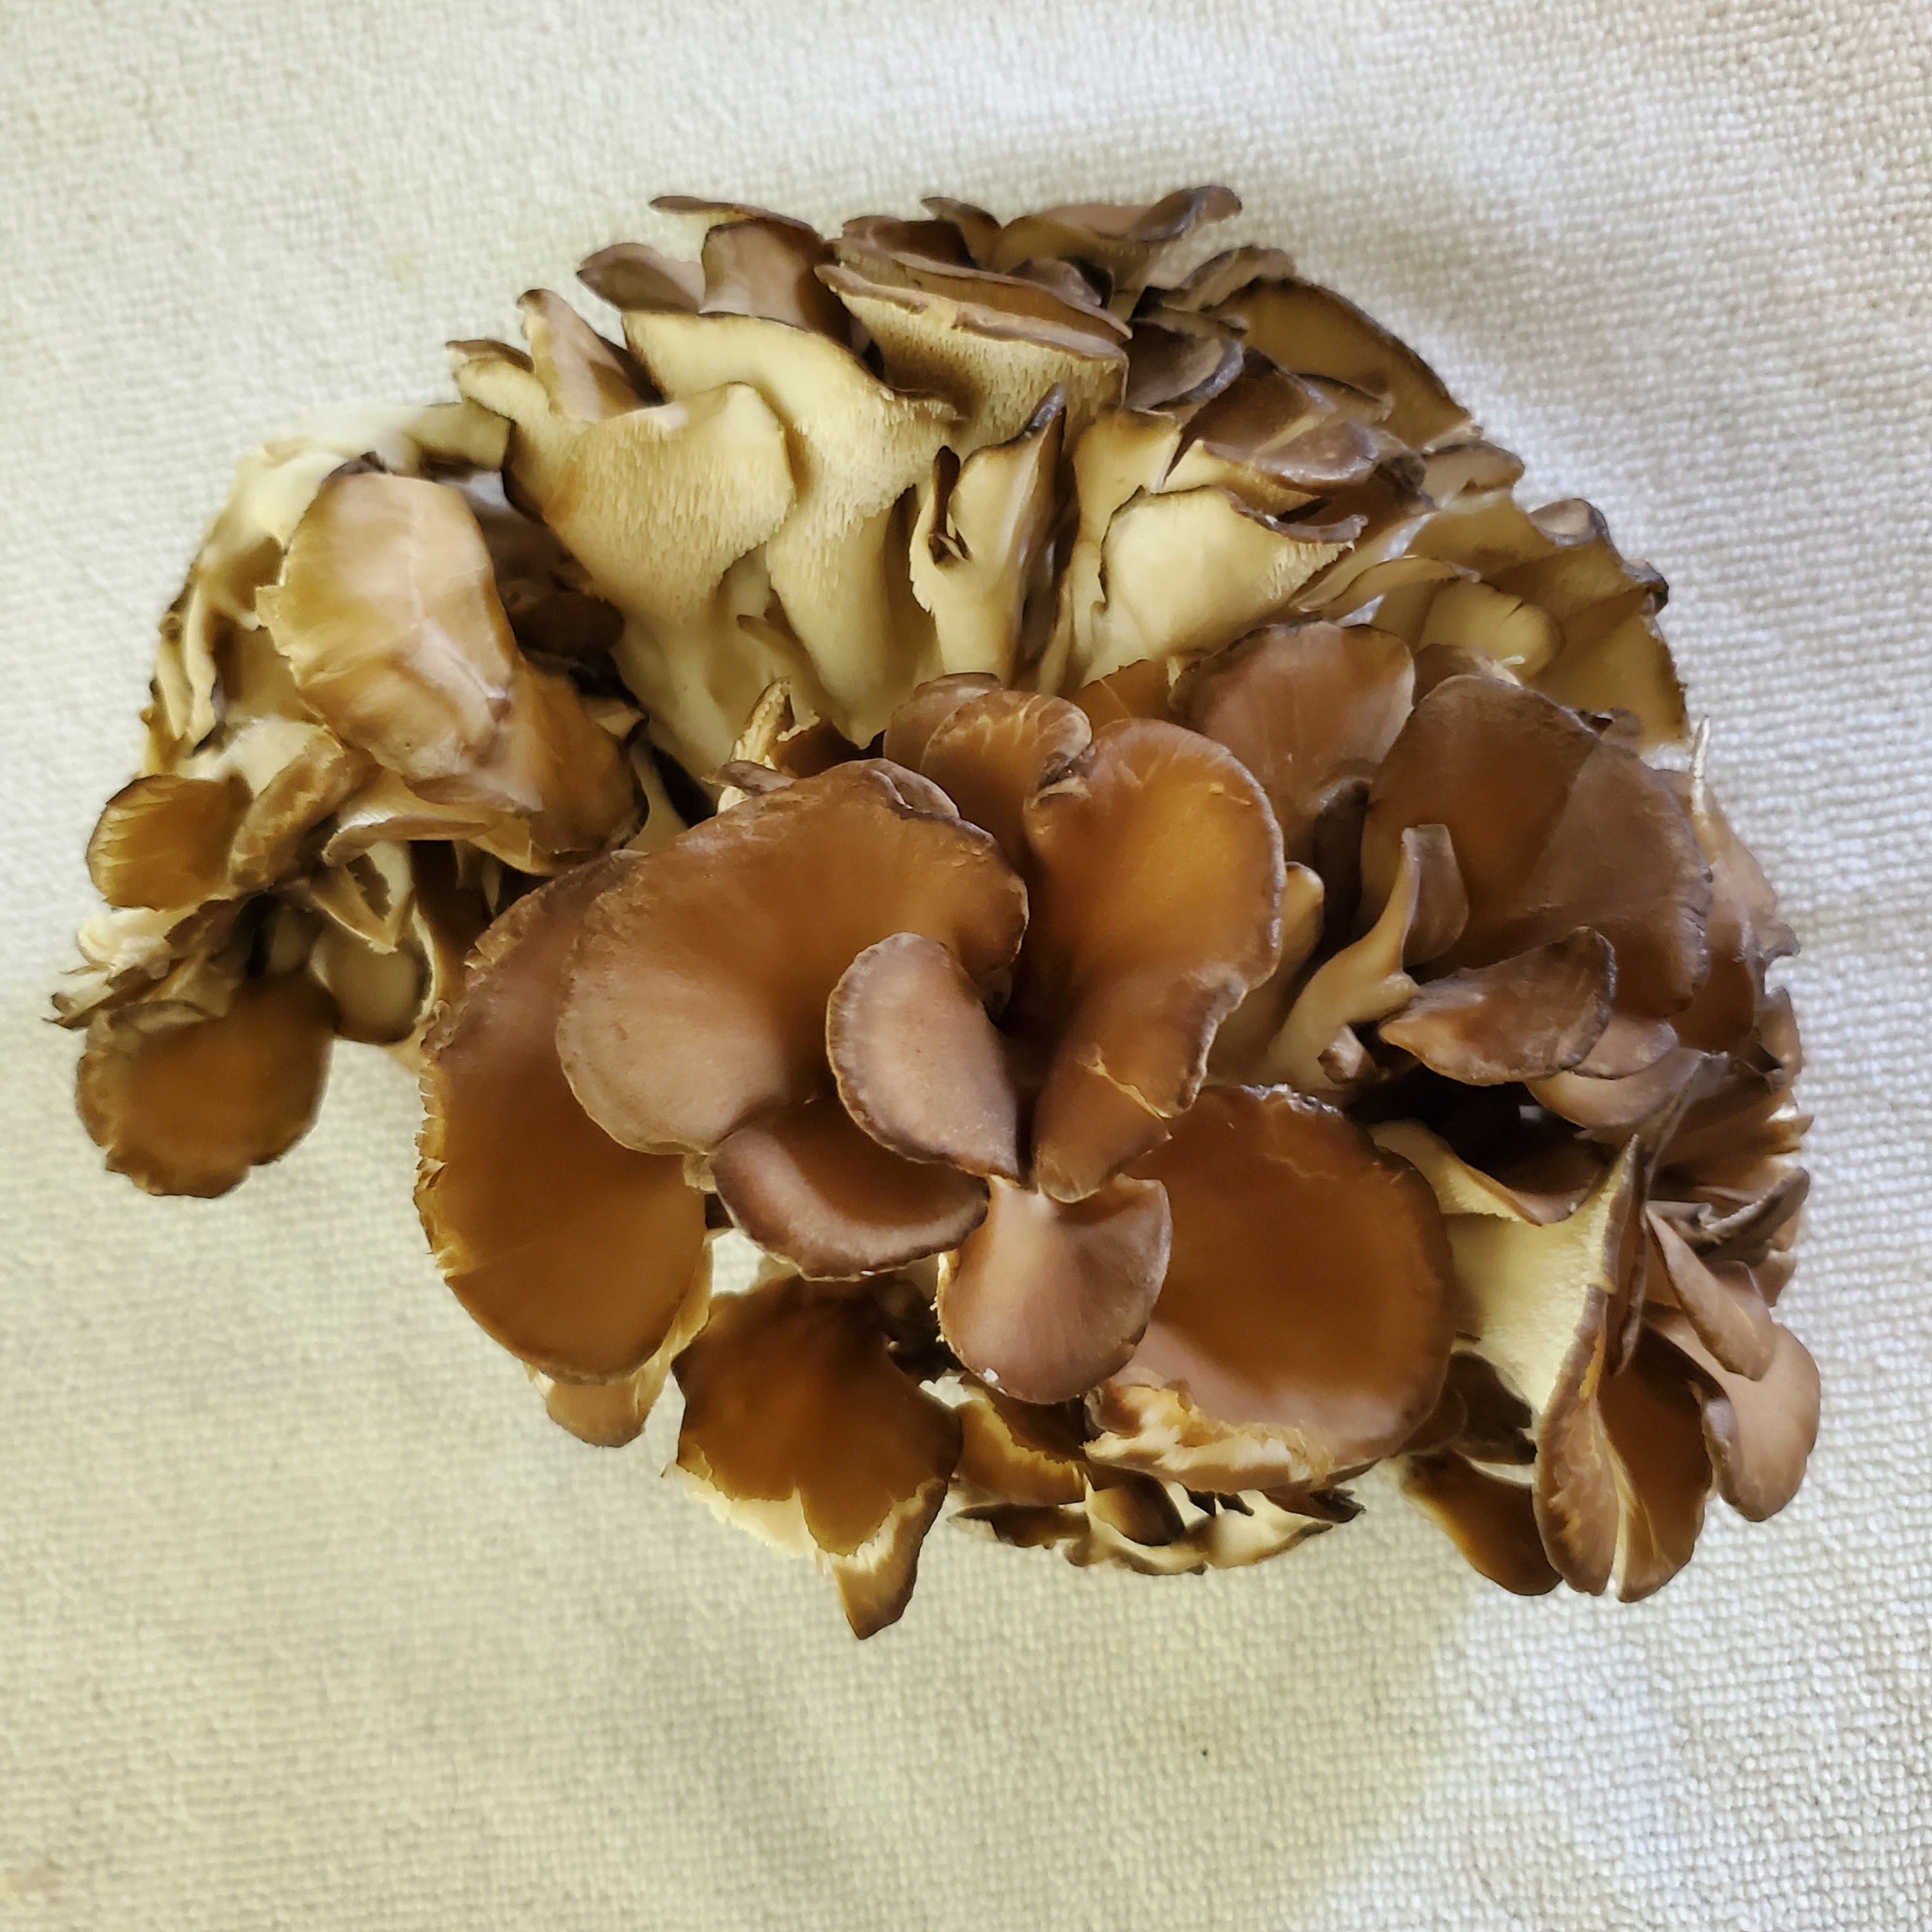 1 Pound Fresh Maitake Mushrooms (Hen of the Woods)